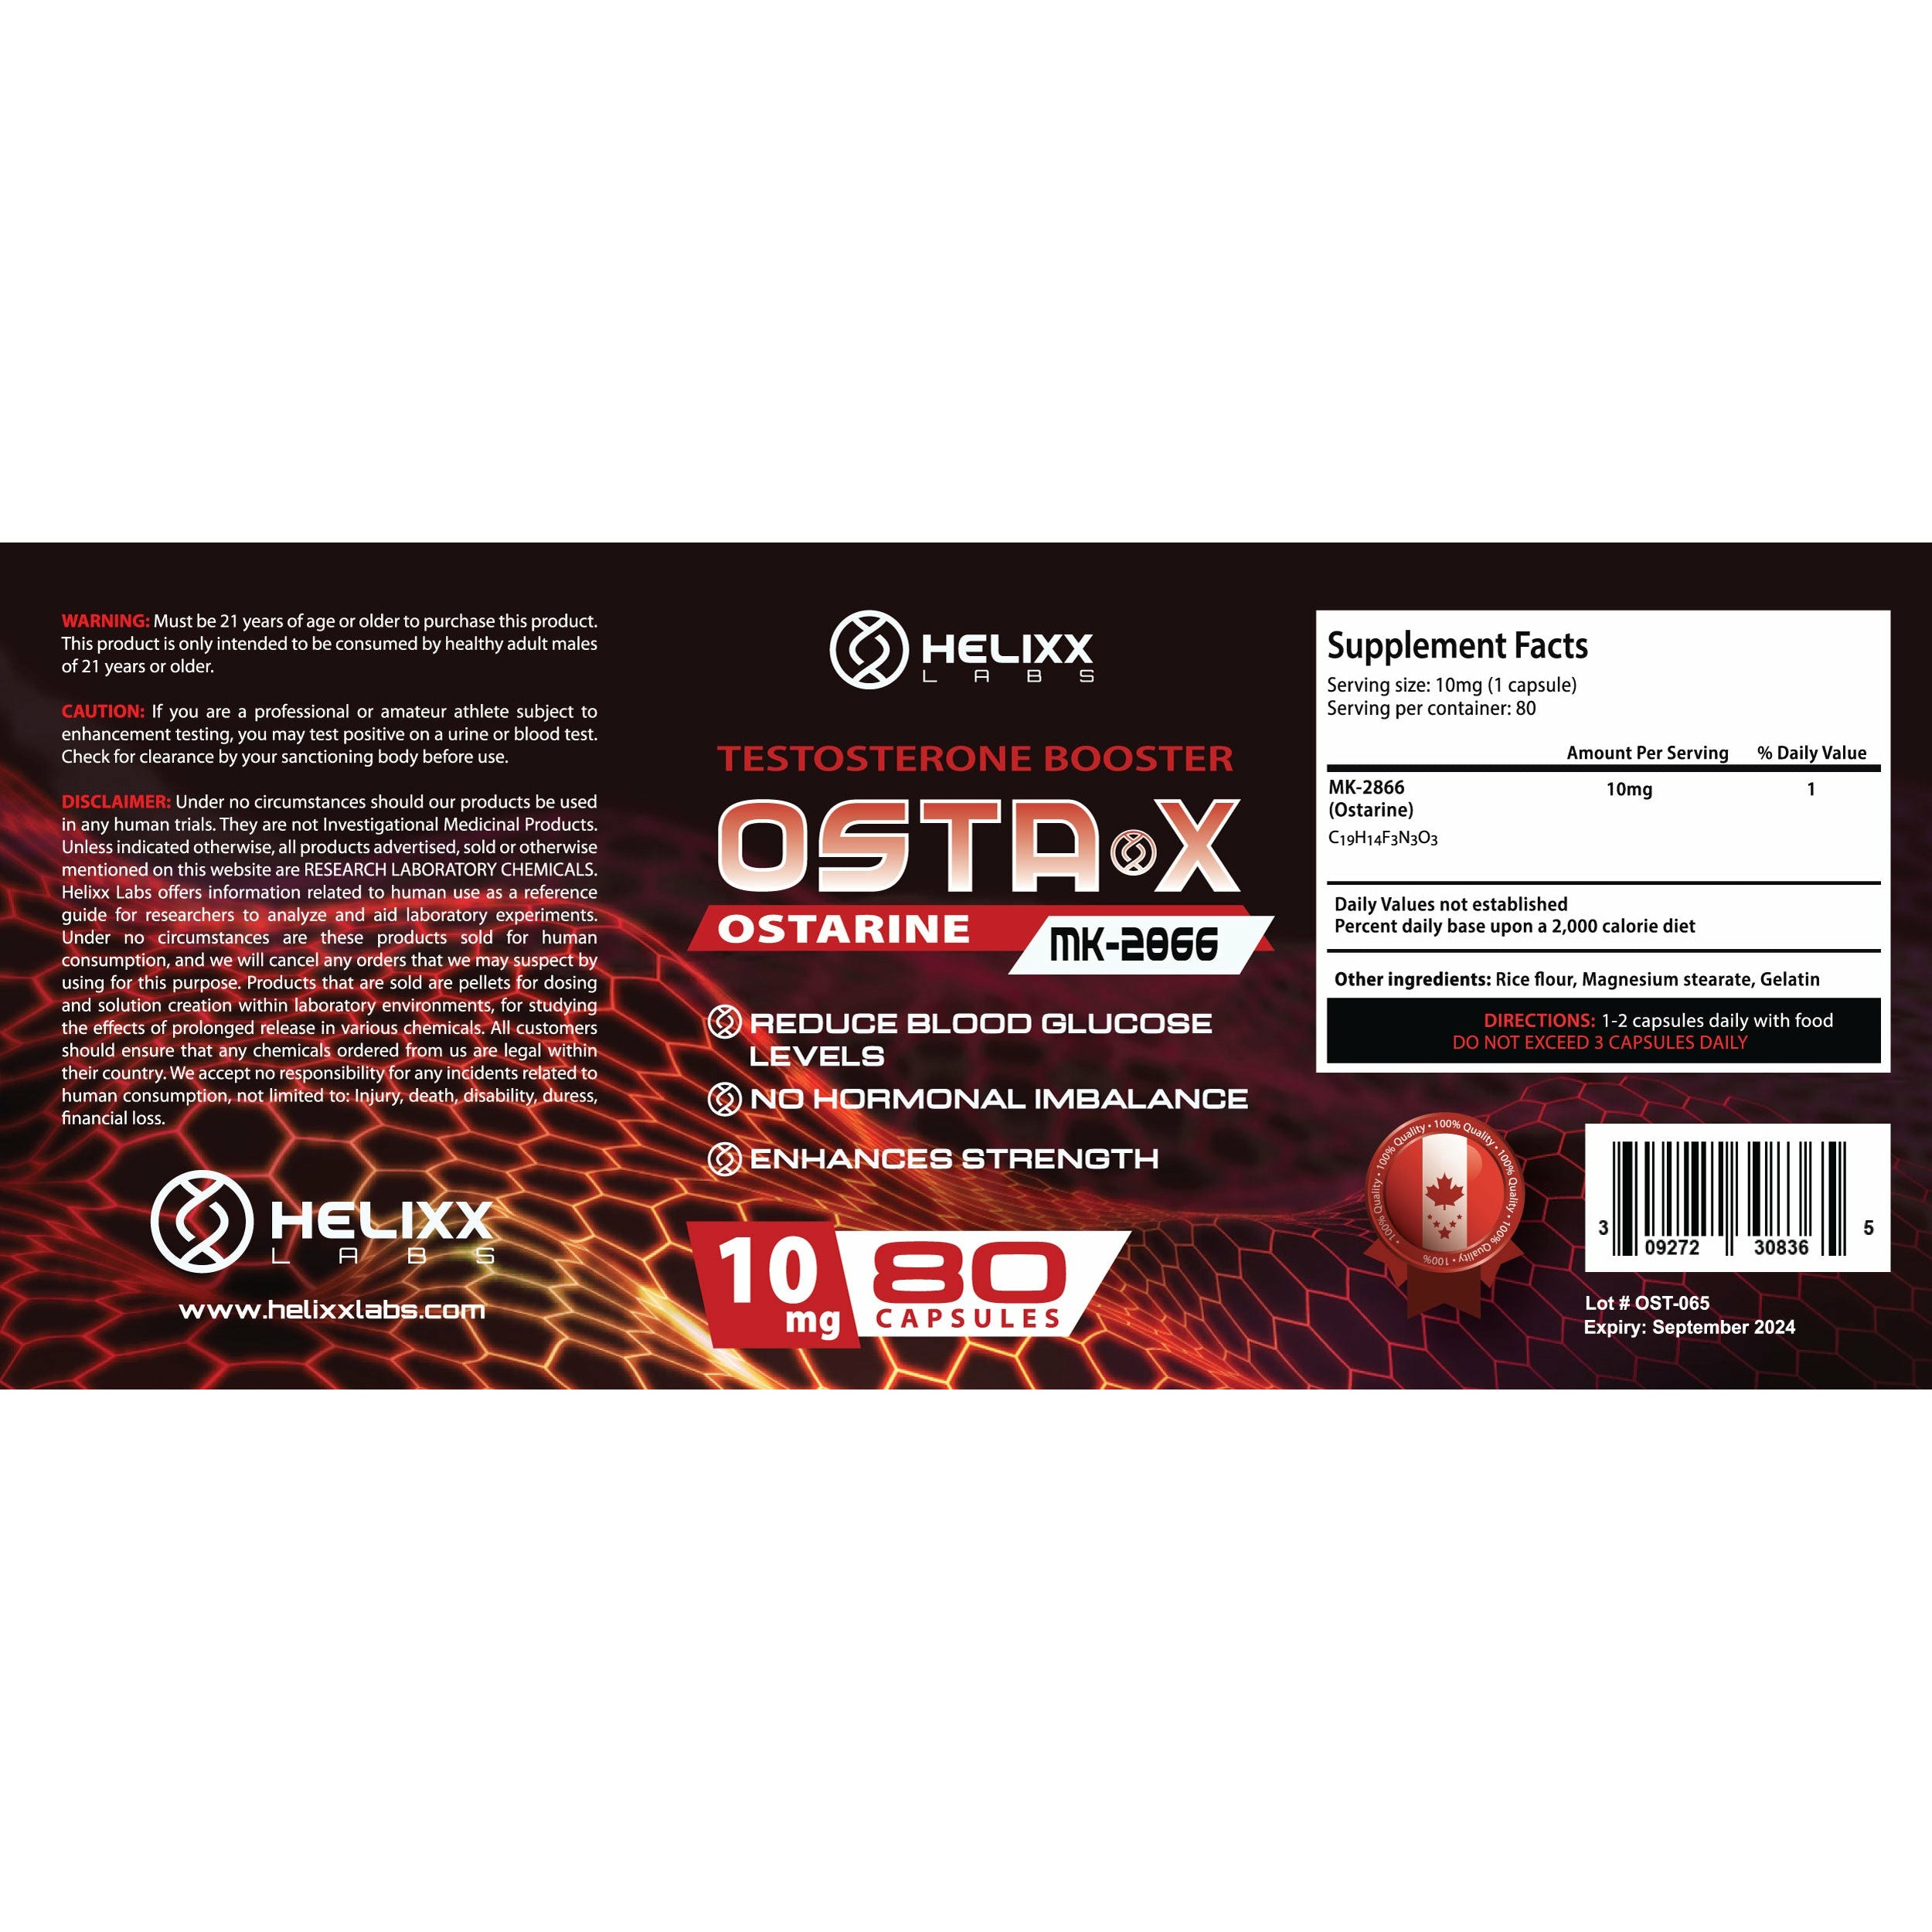 Helixx OSTA X (10mg – 80 capsules) Vitamins & Supplements Helixx